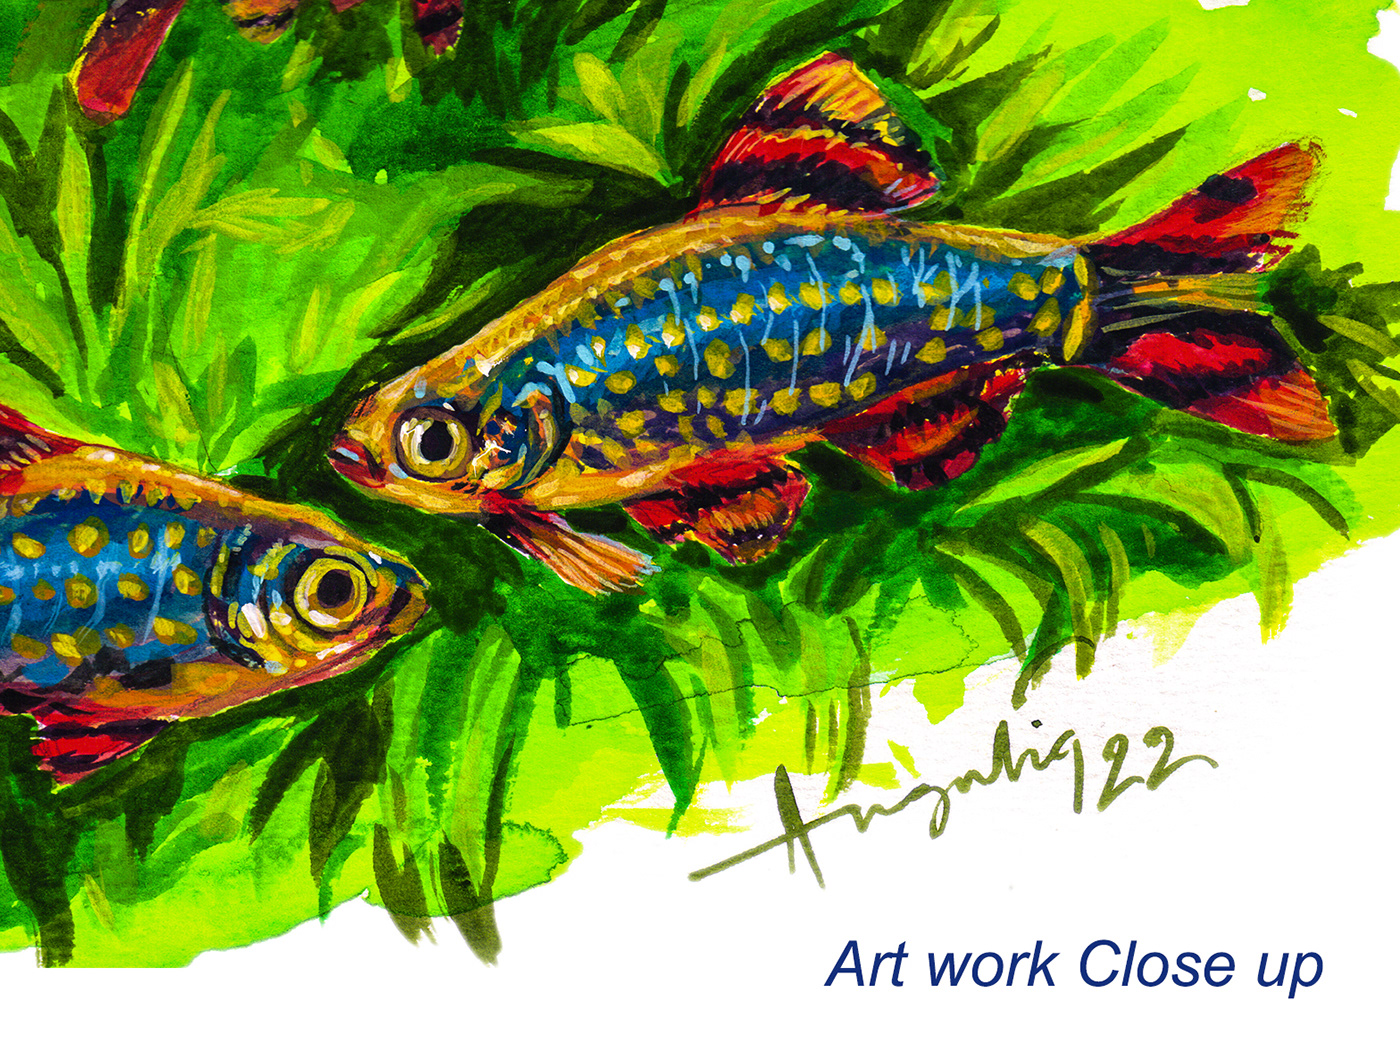 aquarium Aquariumdesign aquascape artwork calendar design calendar2023 fishes gouche painting handpainted illustration ILLUSTRATION 